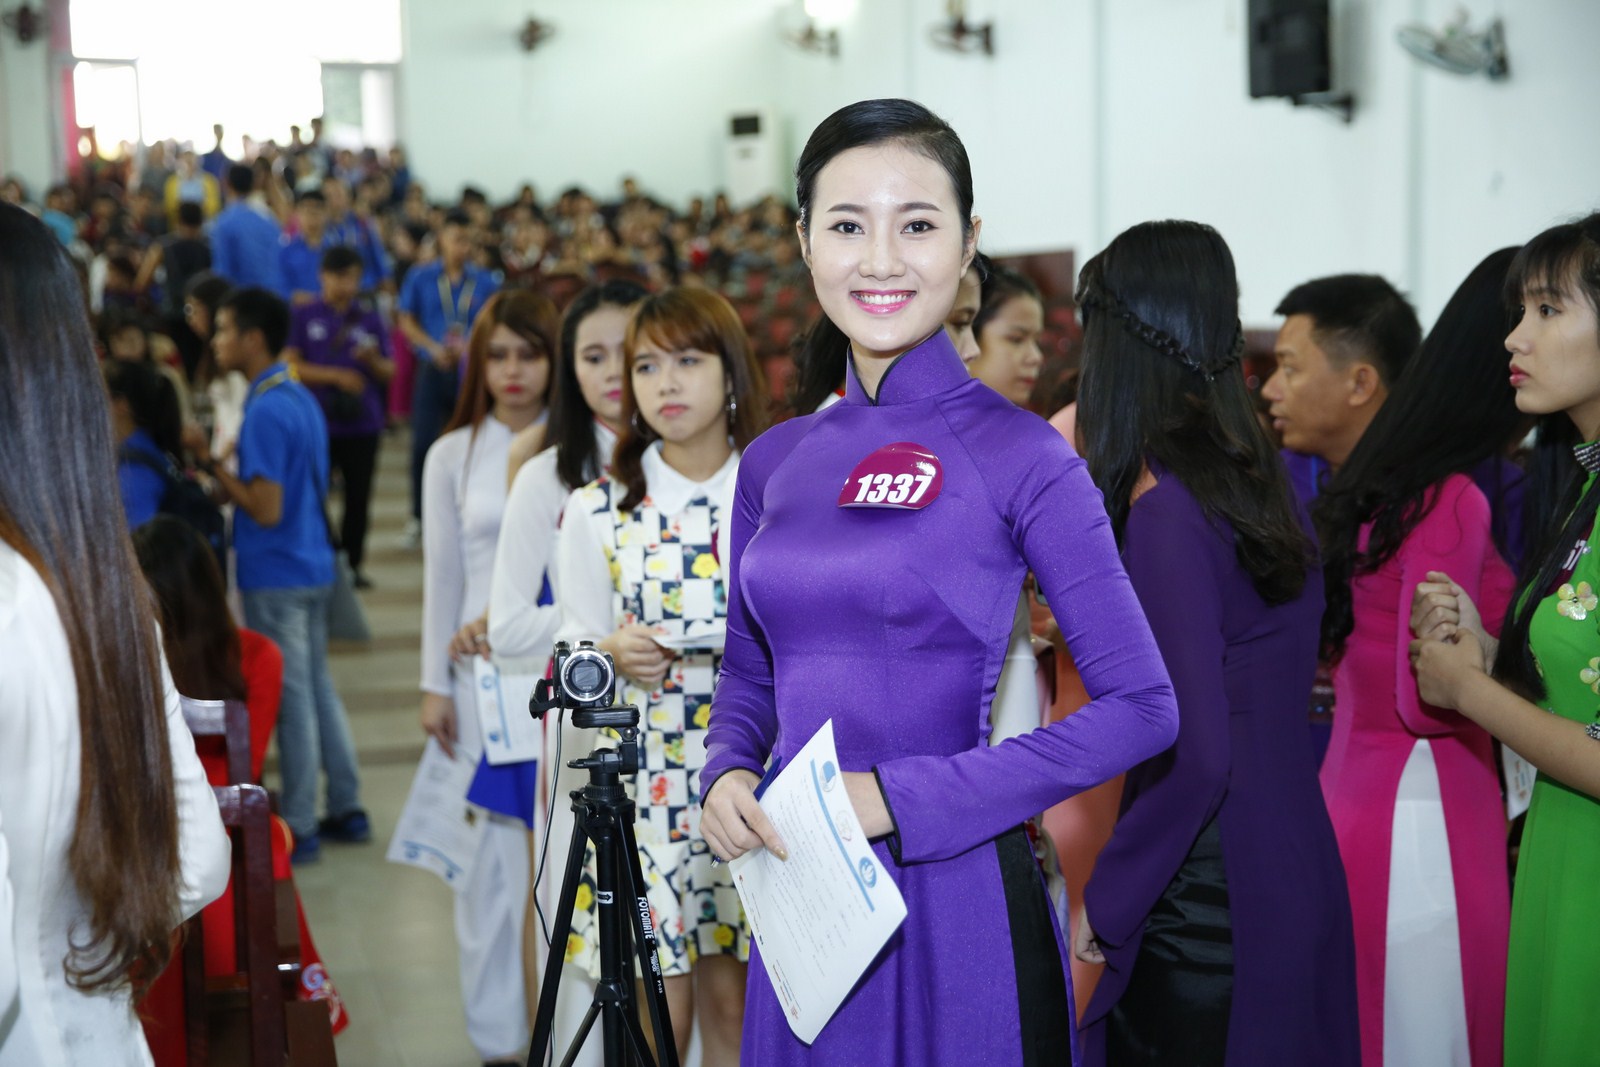 PGS. Tiến sĩ Nhân trắc học Mai Văn Hưng: “Thí sinh tham dự vòng sơ khảo VMU 2015 tại Huế rất tỏa sáng”